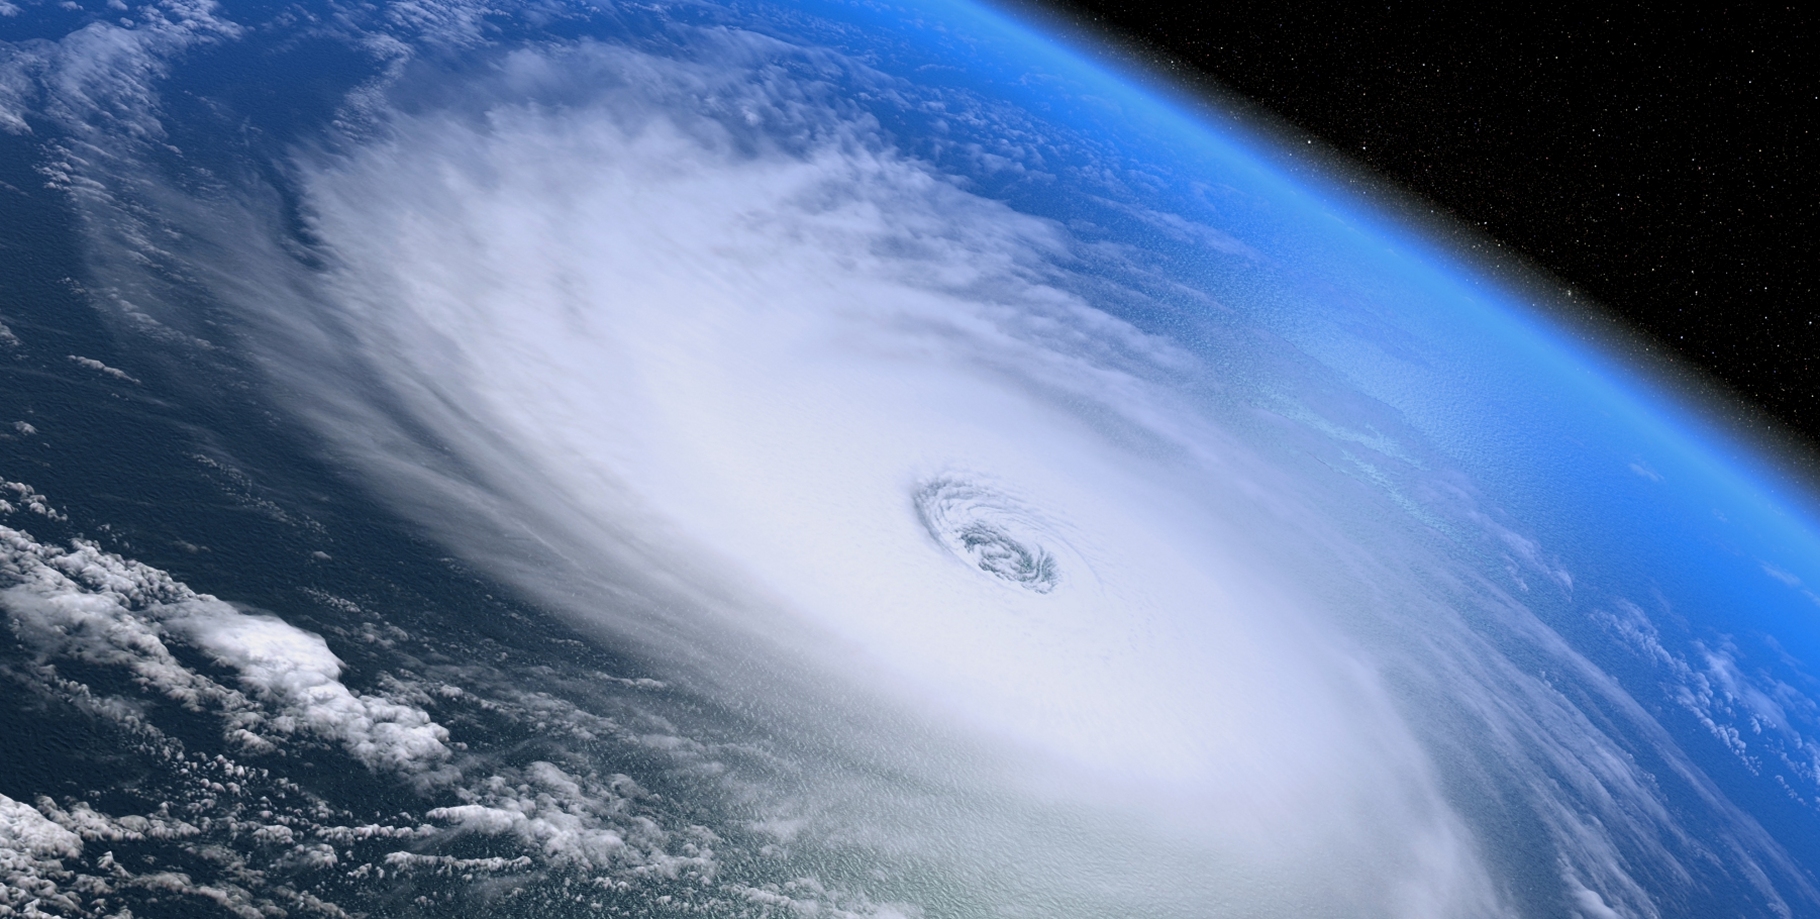 Représentation d'un cyclone vu depuis l'espace. © Shutterstock, 3dmotus